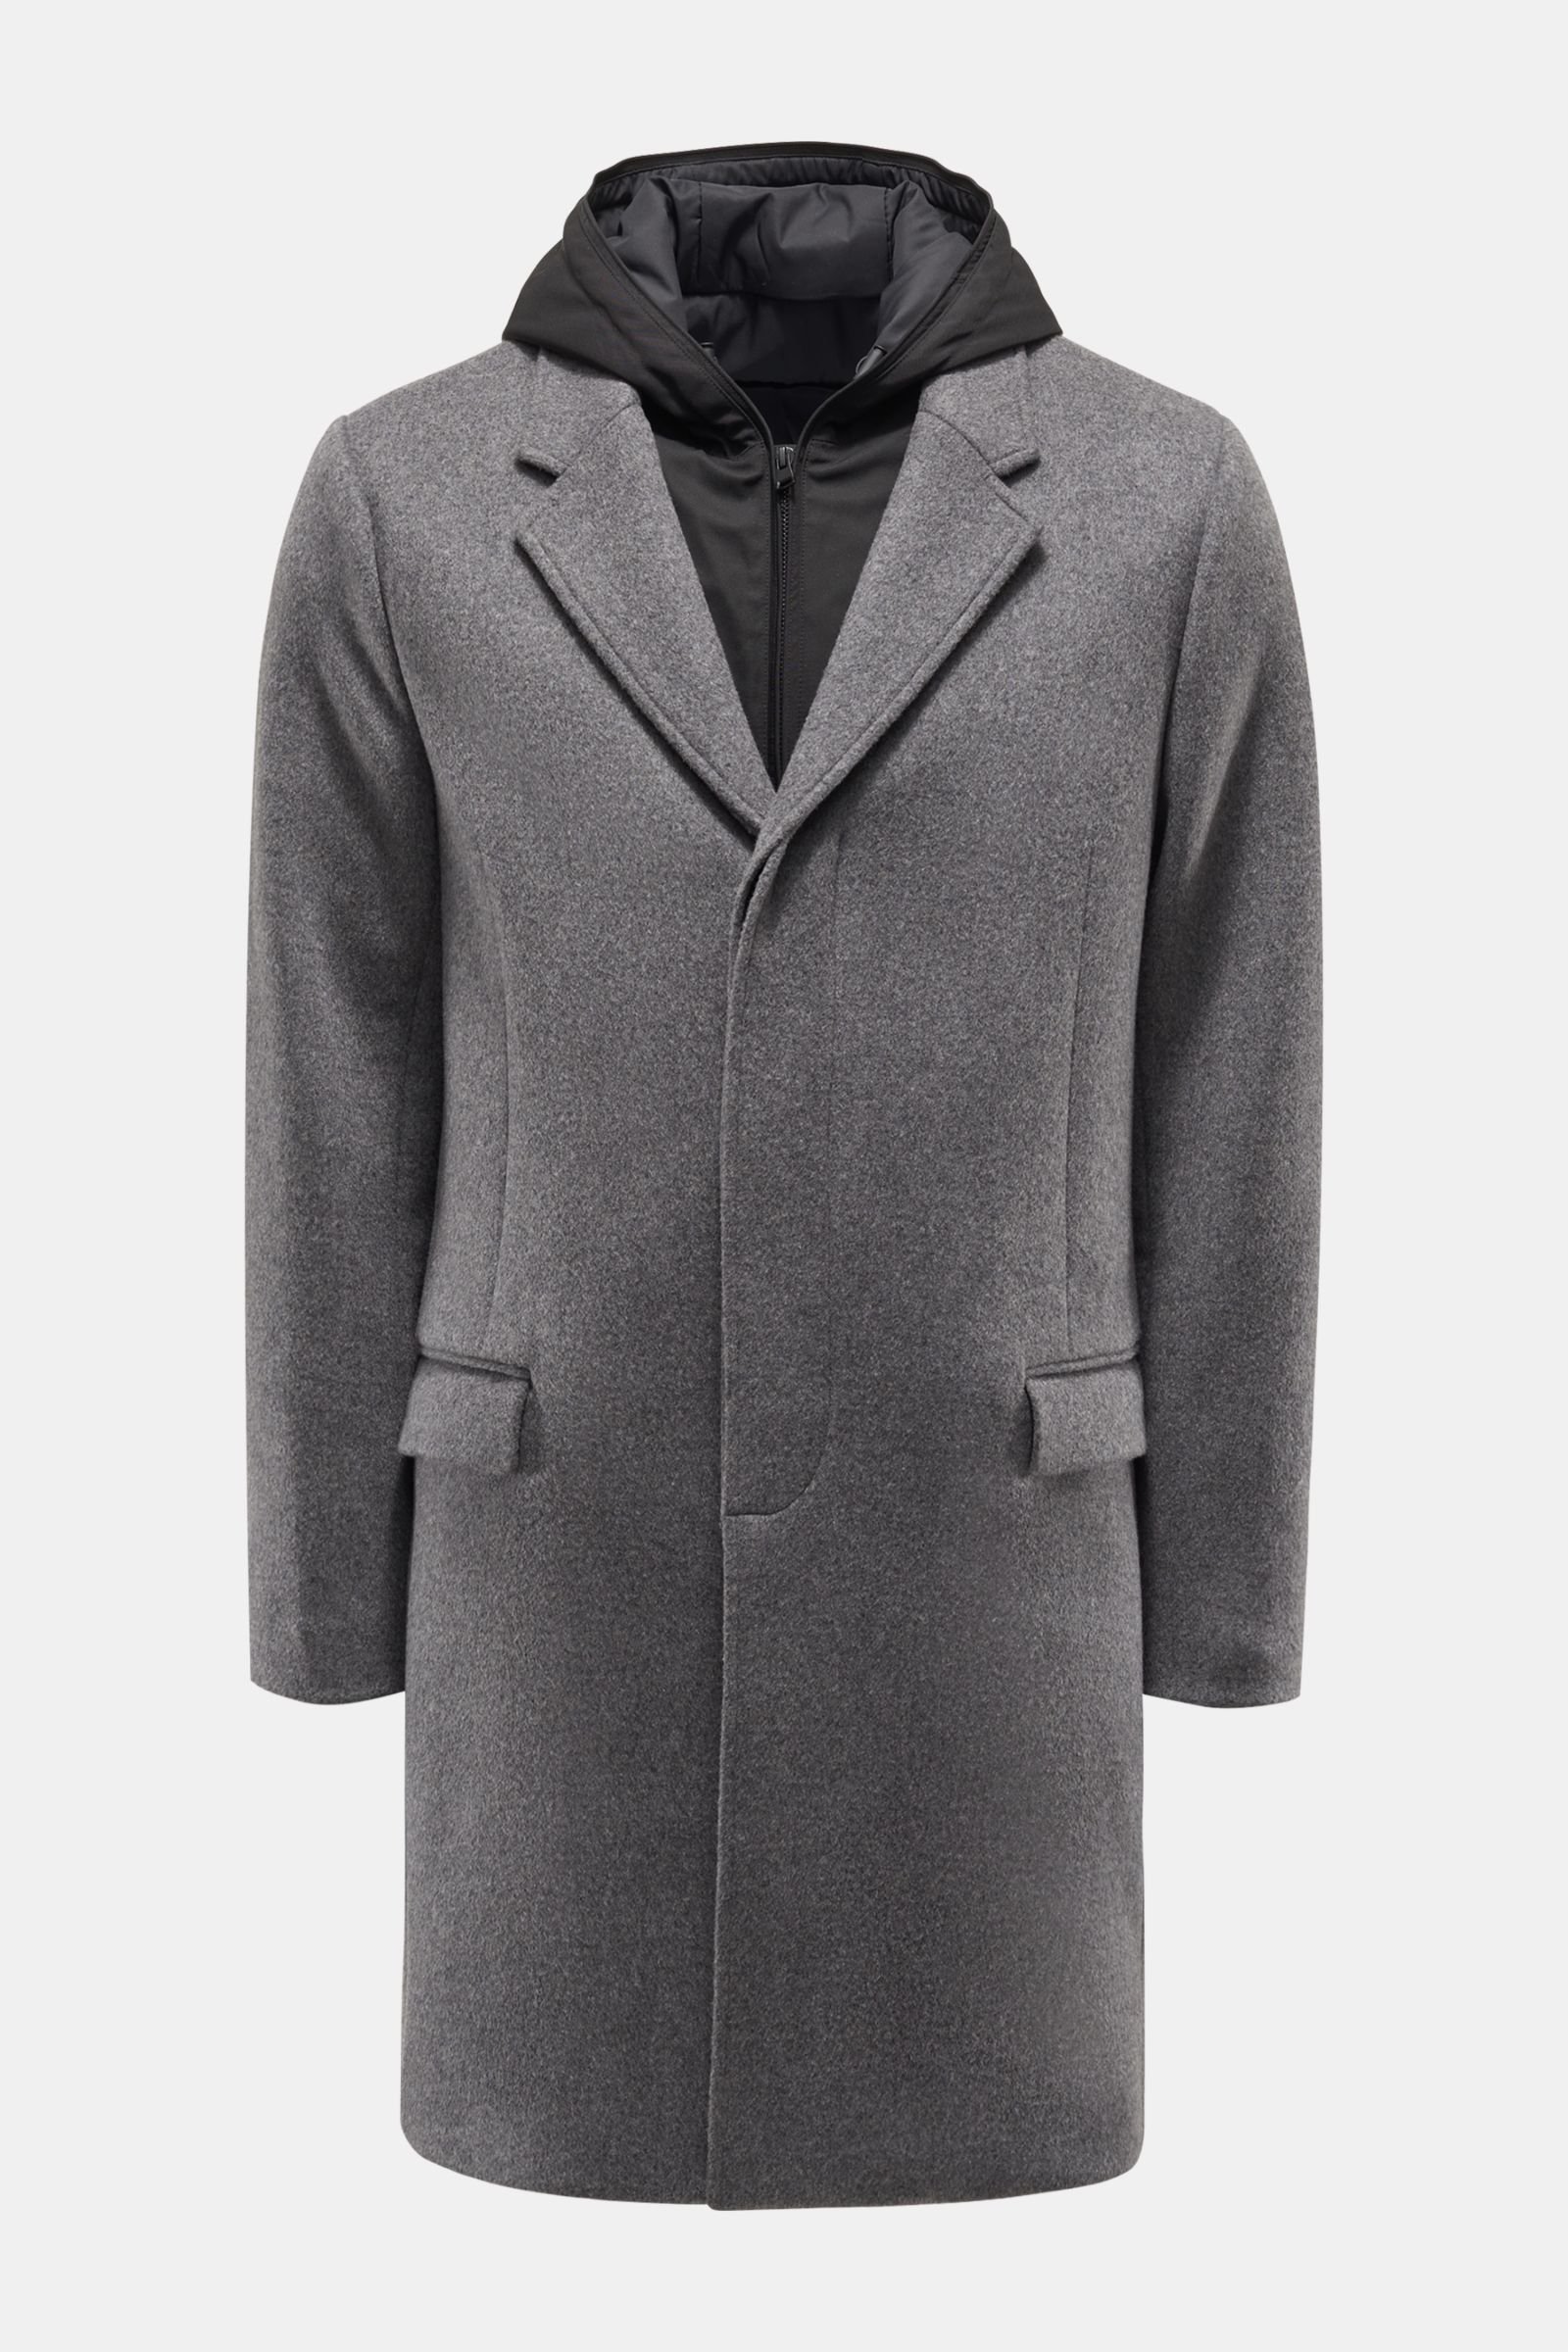 Coat dark grey